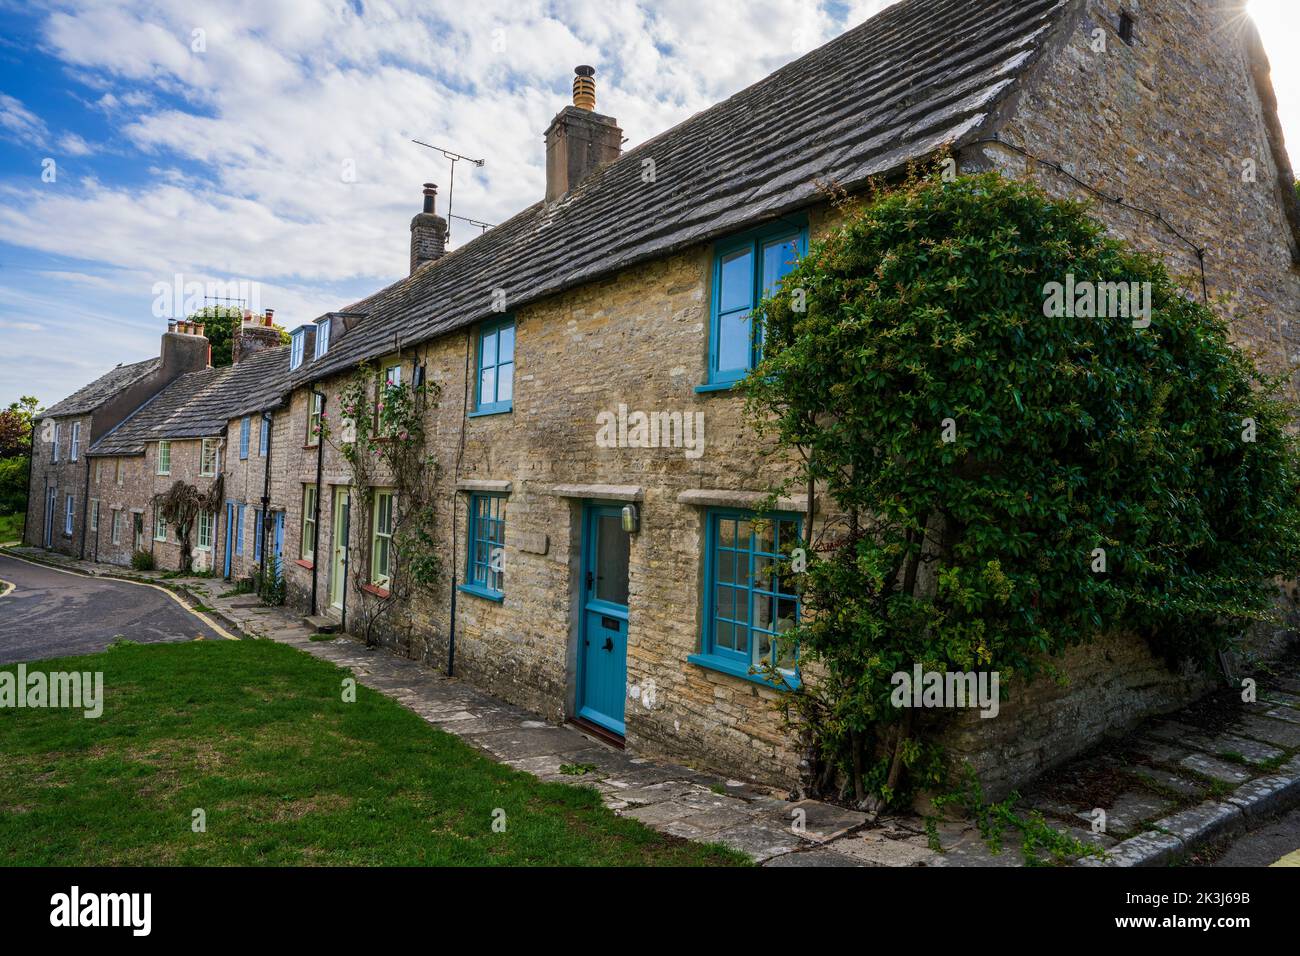 Une rangée de cottages construits de la pierre de Purbeck local à Worth Matravers Dorset England UK Banque D'Images